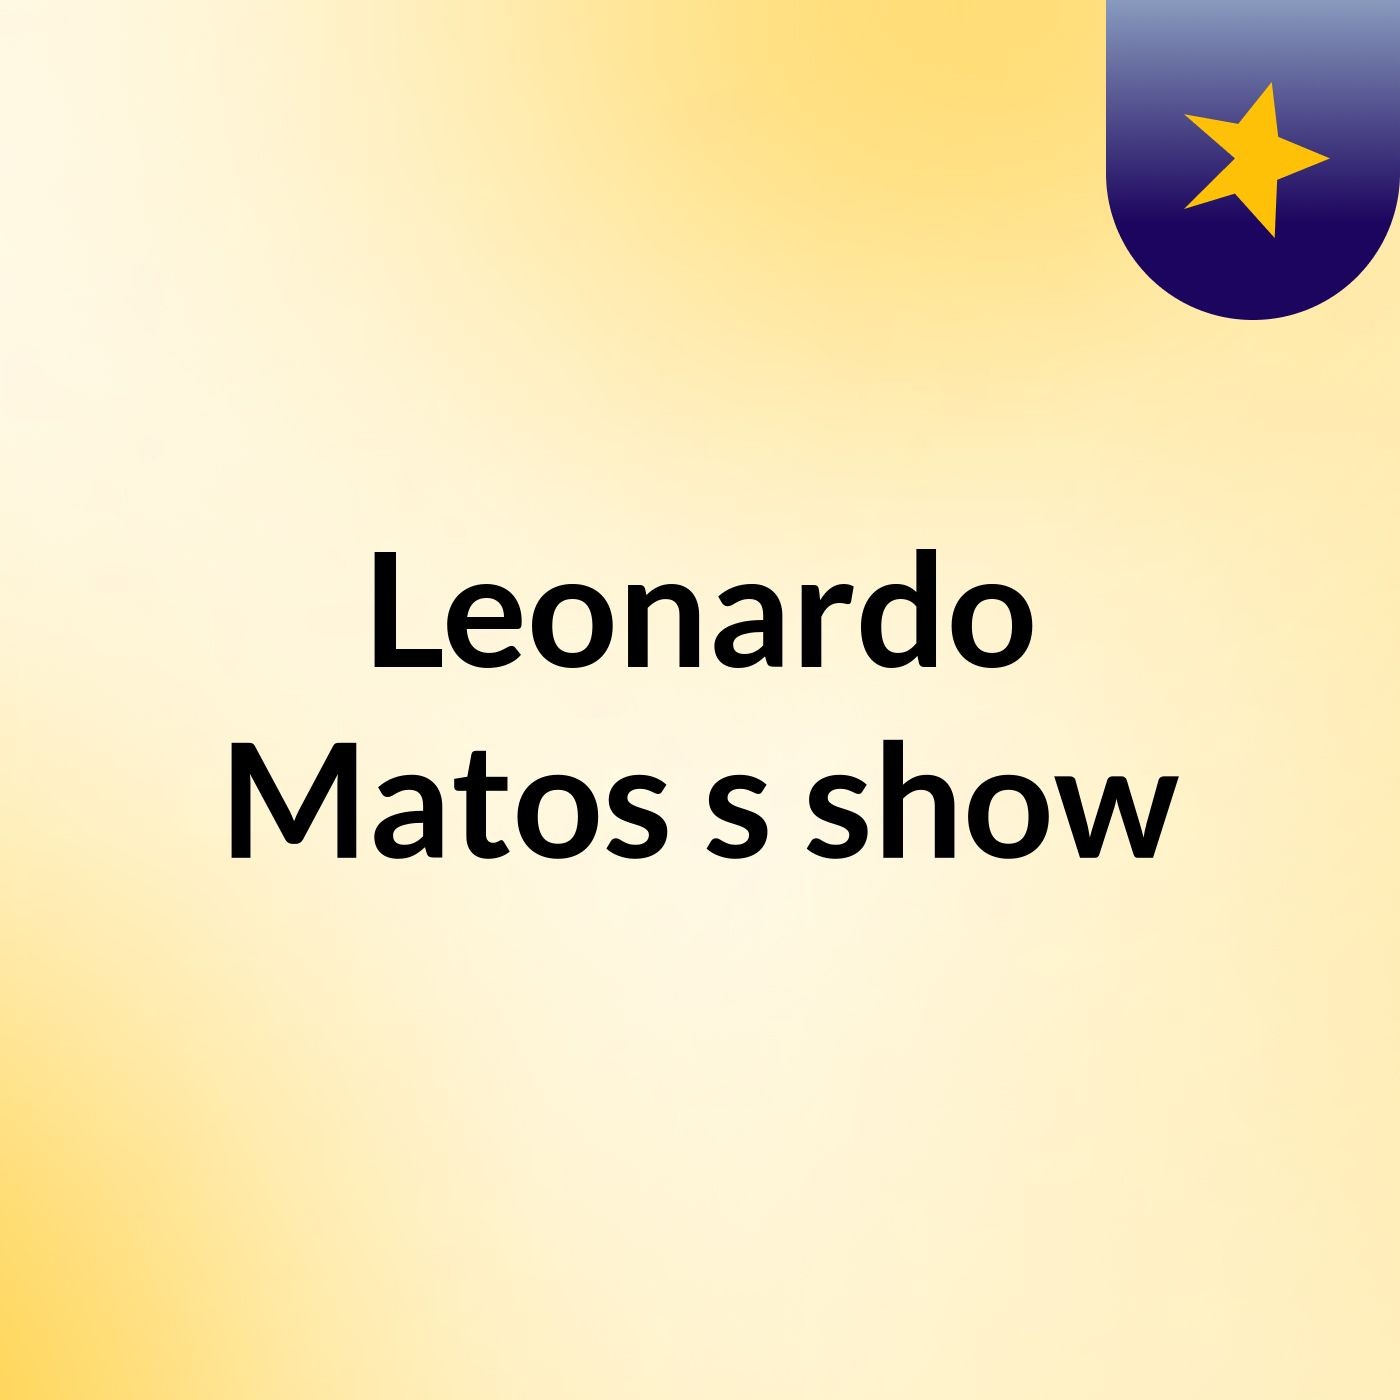 Leonardo Matos's show